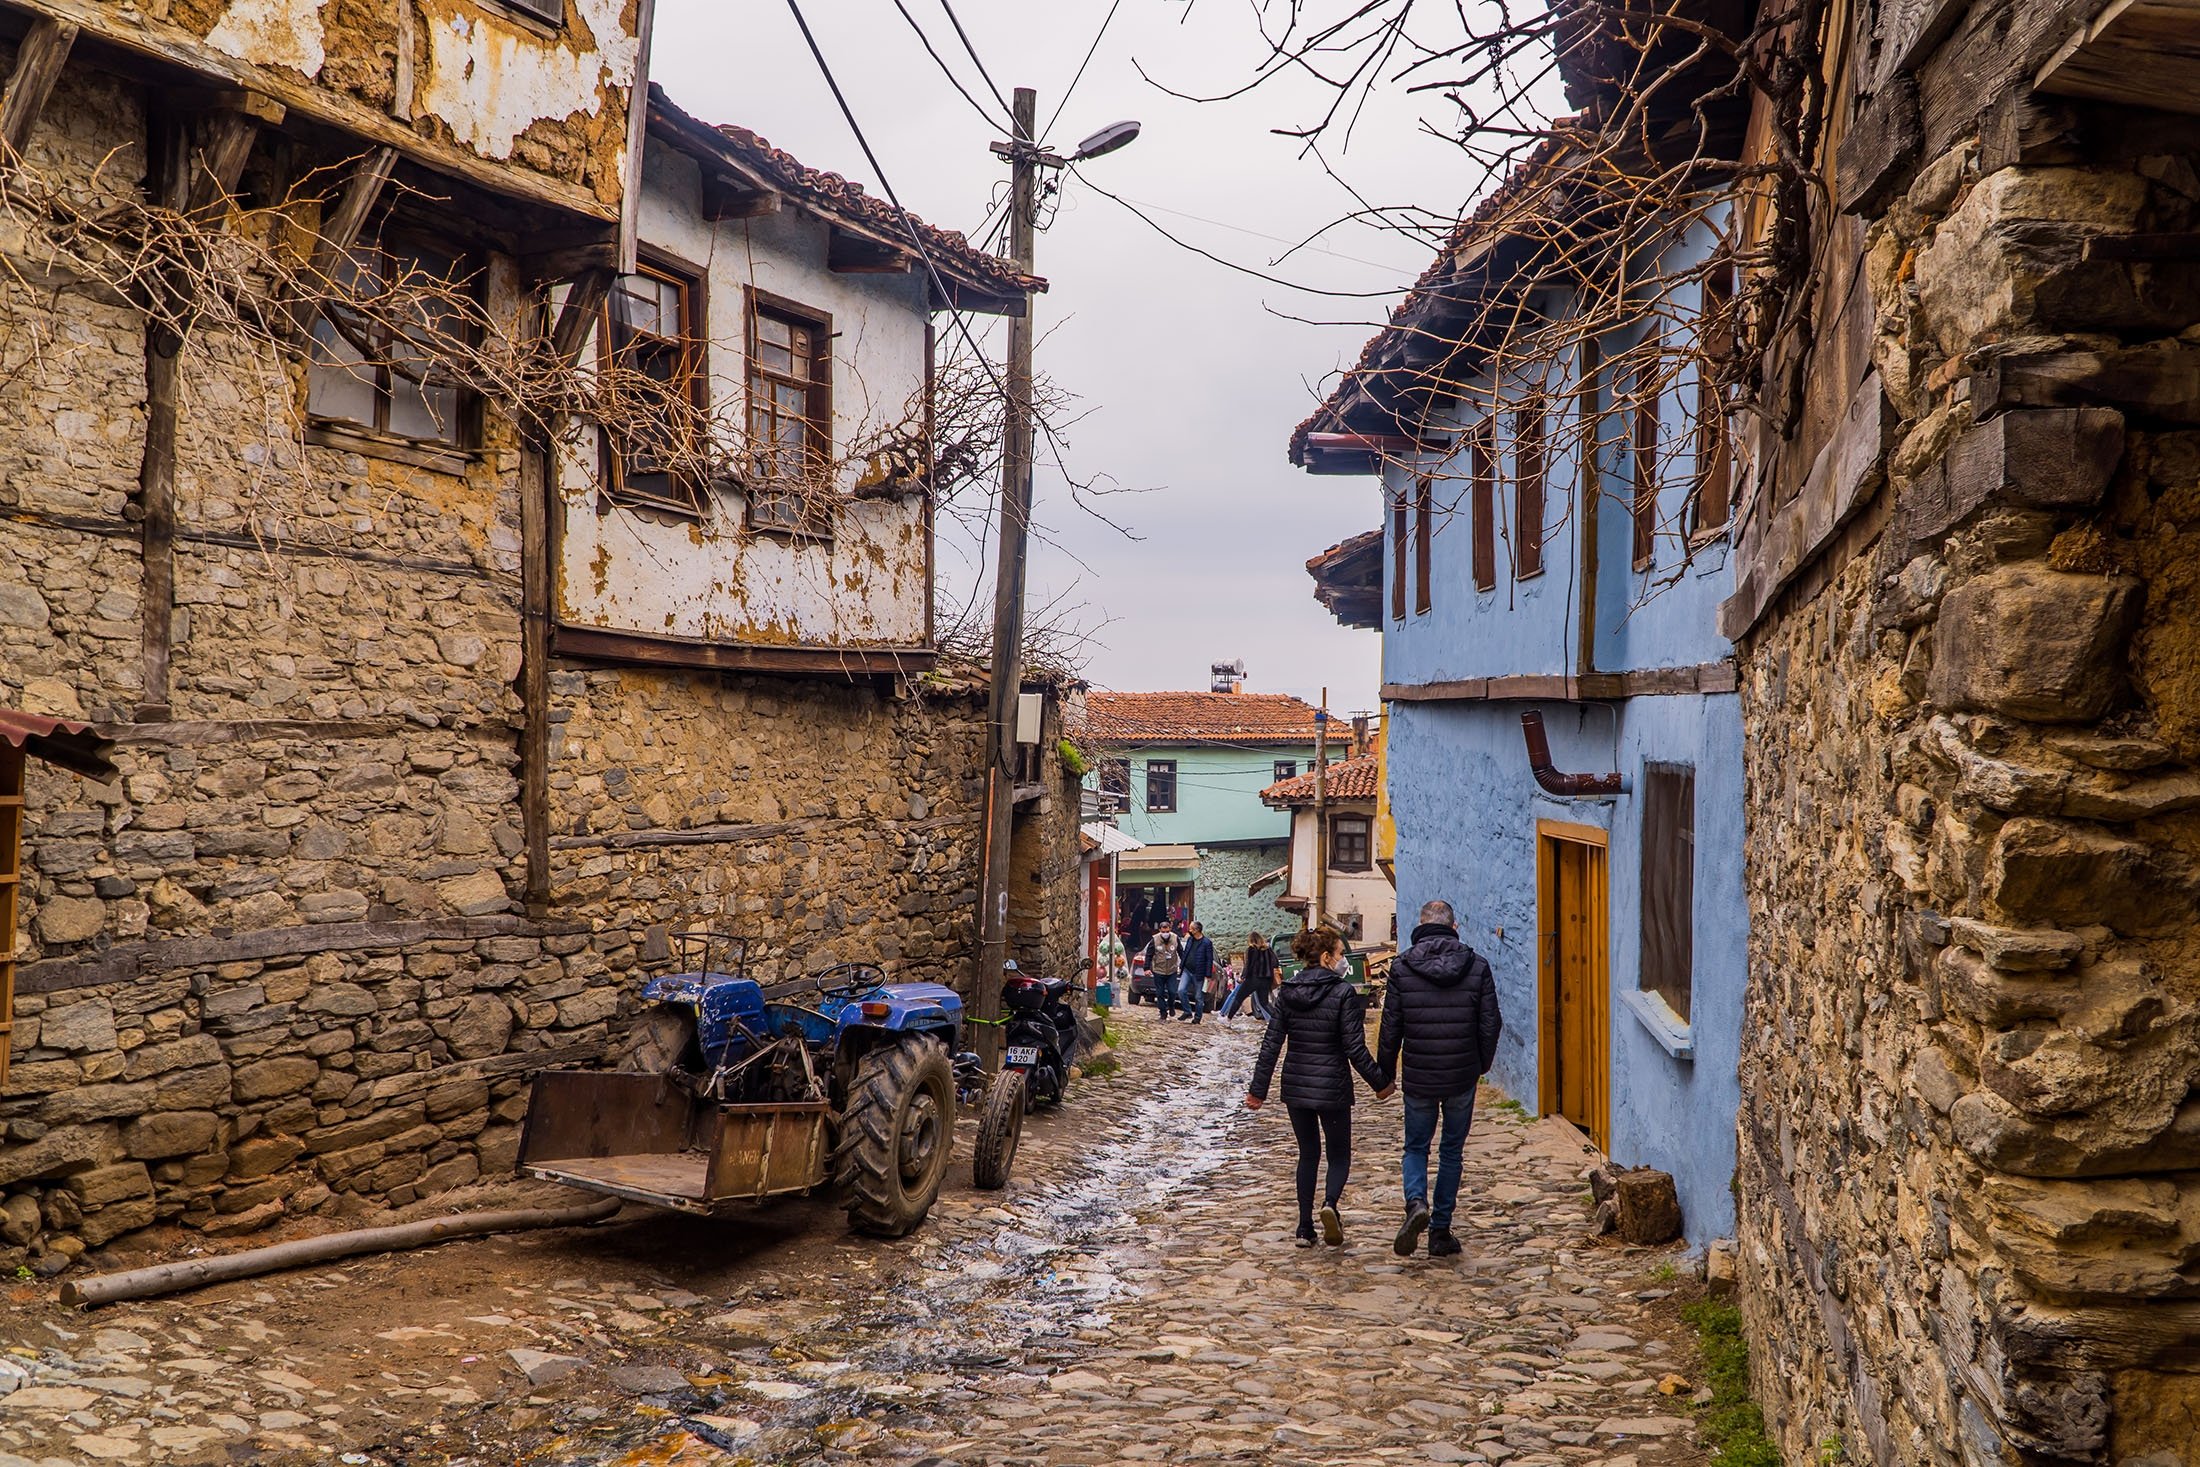 Fitur paling mencolok dari rumah batu desa tradisional di Turki adalah ukurannya karena sangat kecil.  (Foto Shutterstock)